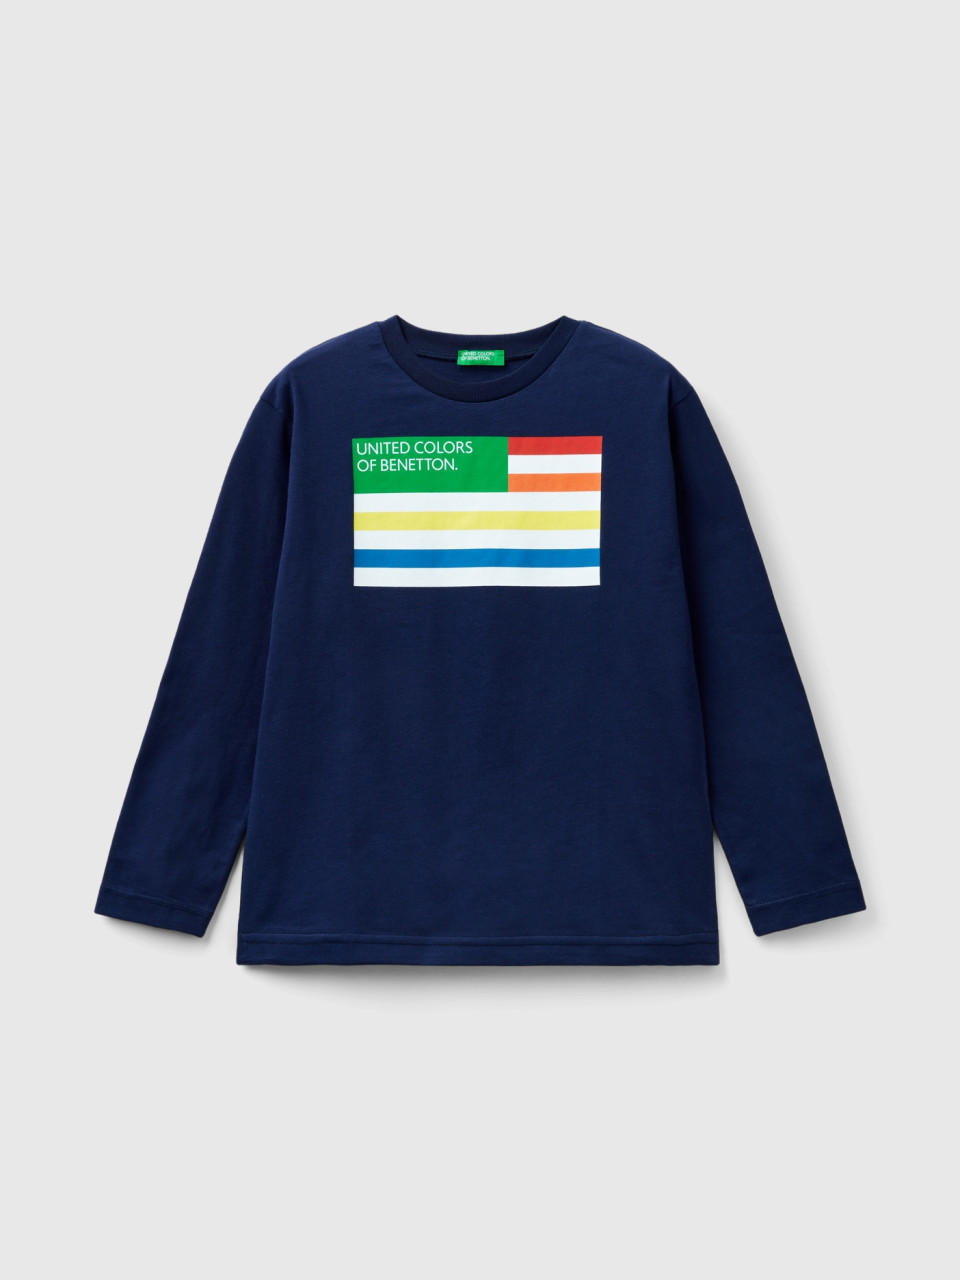 Benetton, Long Sleeve Organic Cotton T-shirt, Dark Blue, Kids